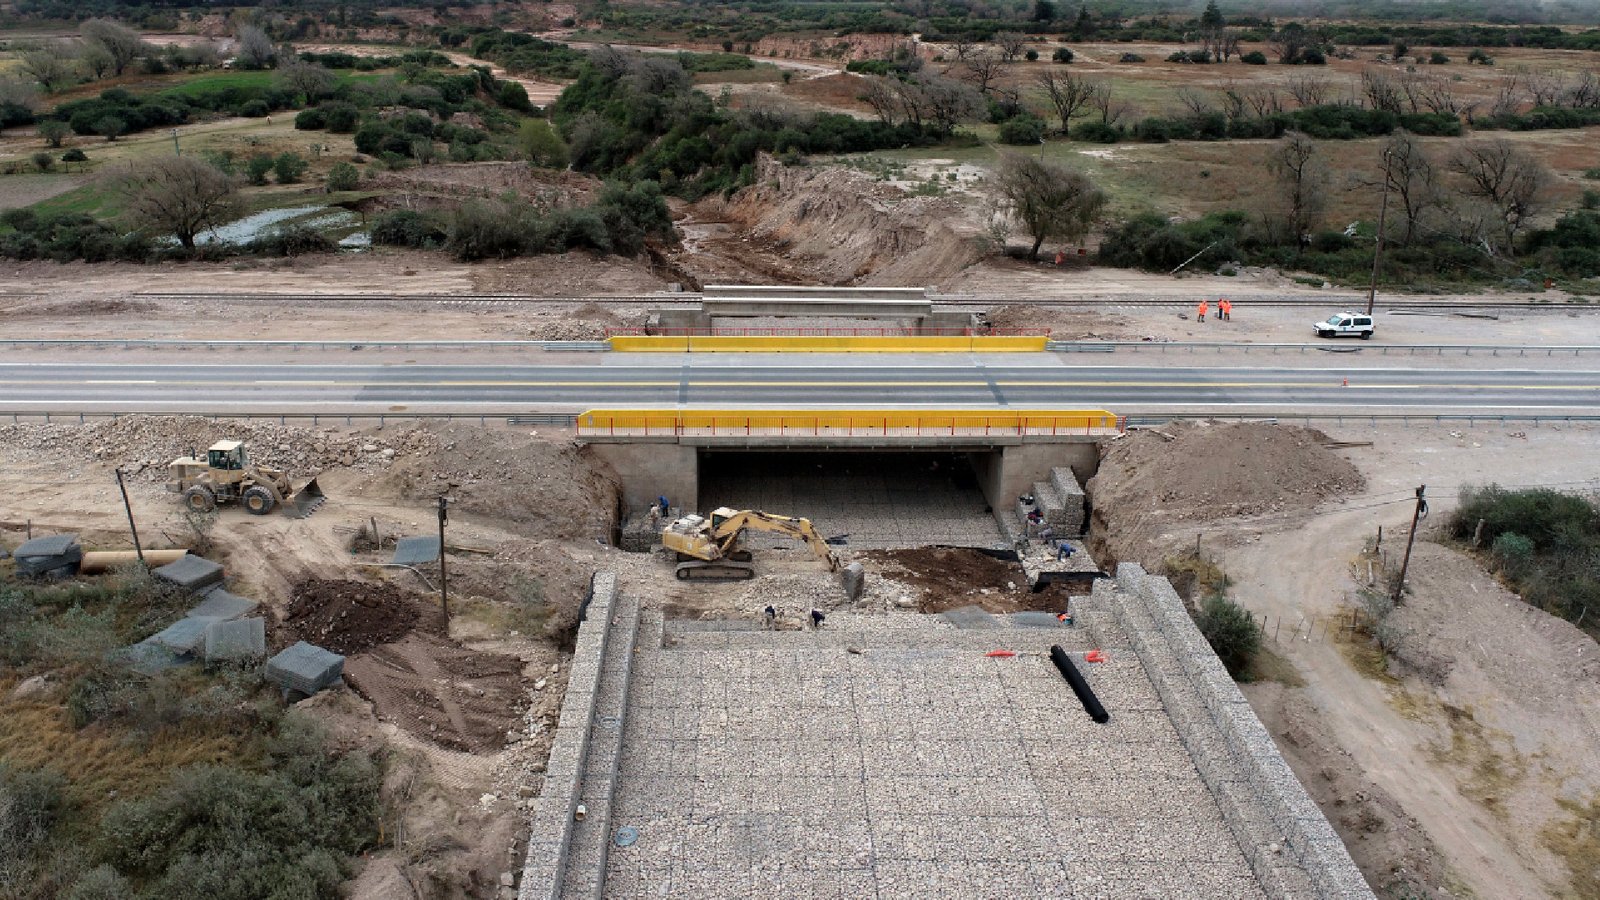 noticiaspuertosantacruz.com.ar - Imagen extraida de: https://elconstructor.com/jujuy-habilitaron-el-nuevo-puente-sobre-el-arroyo-coiruro-en-la-ruta-nacional-9/